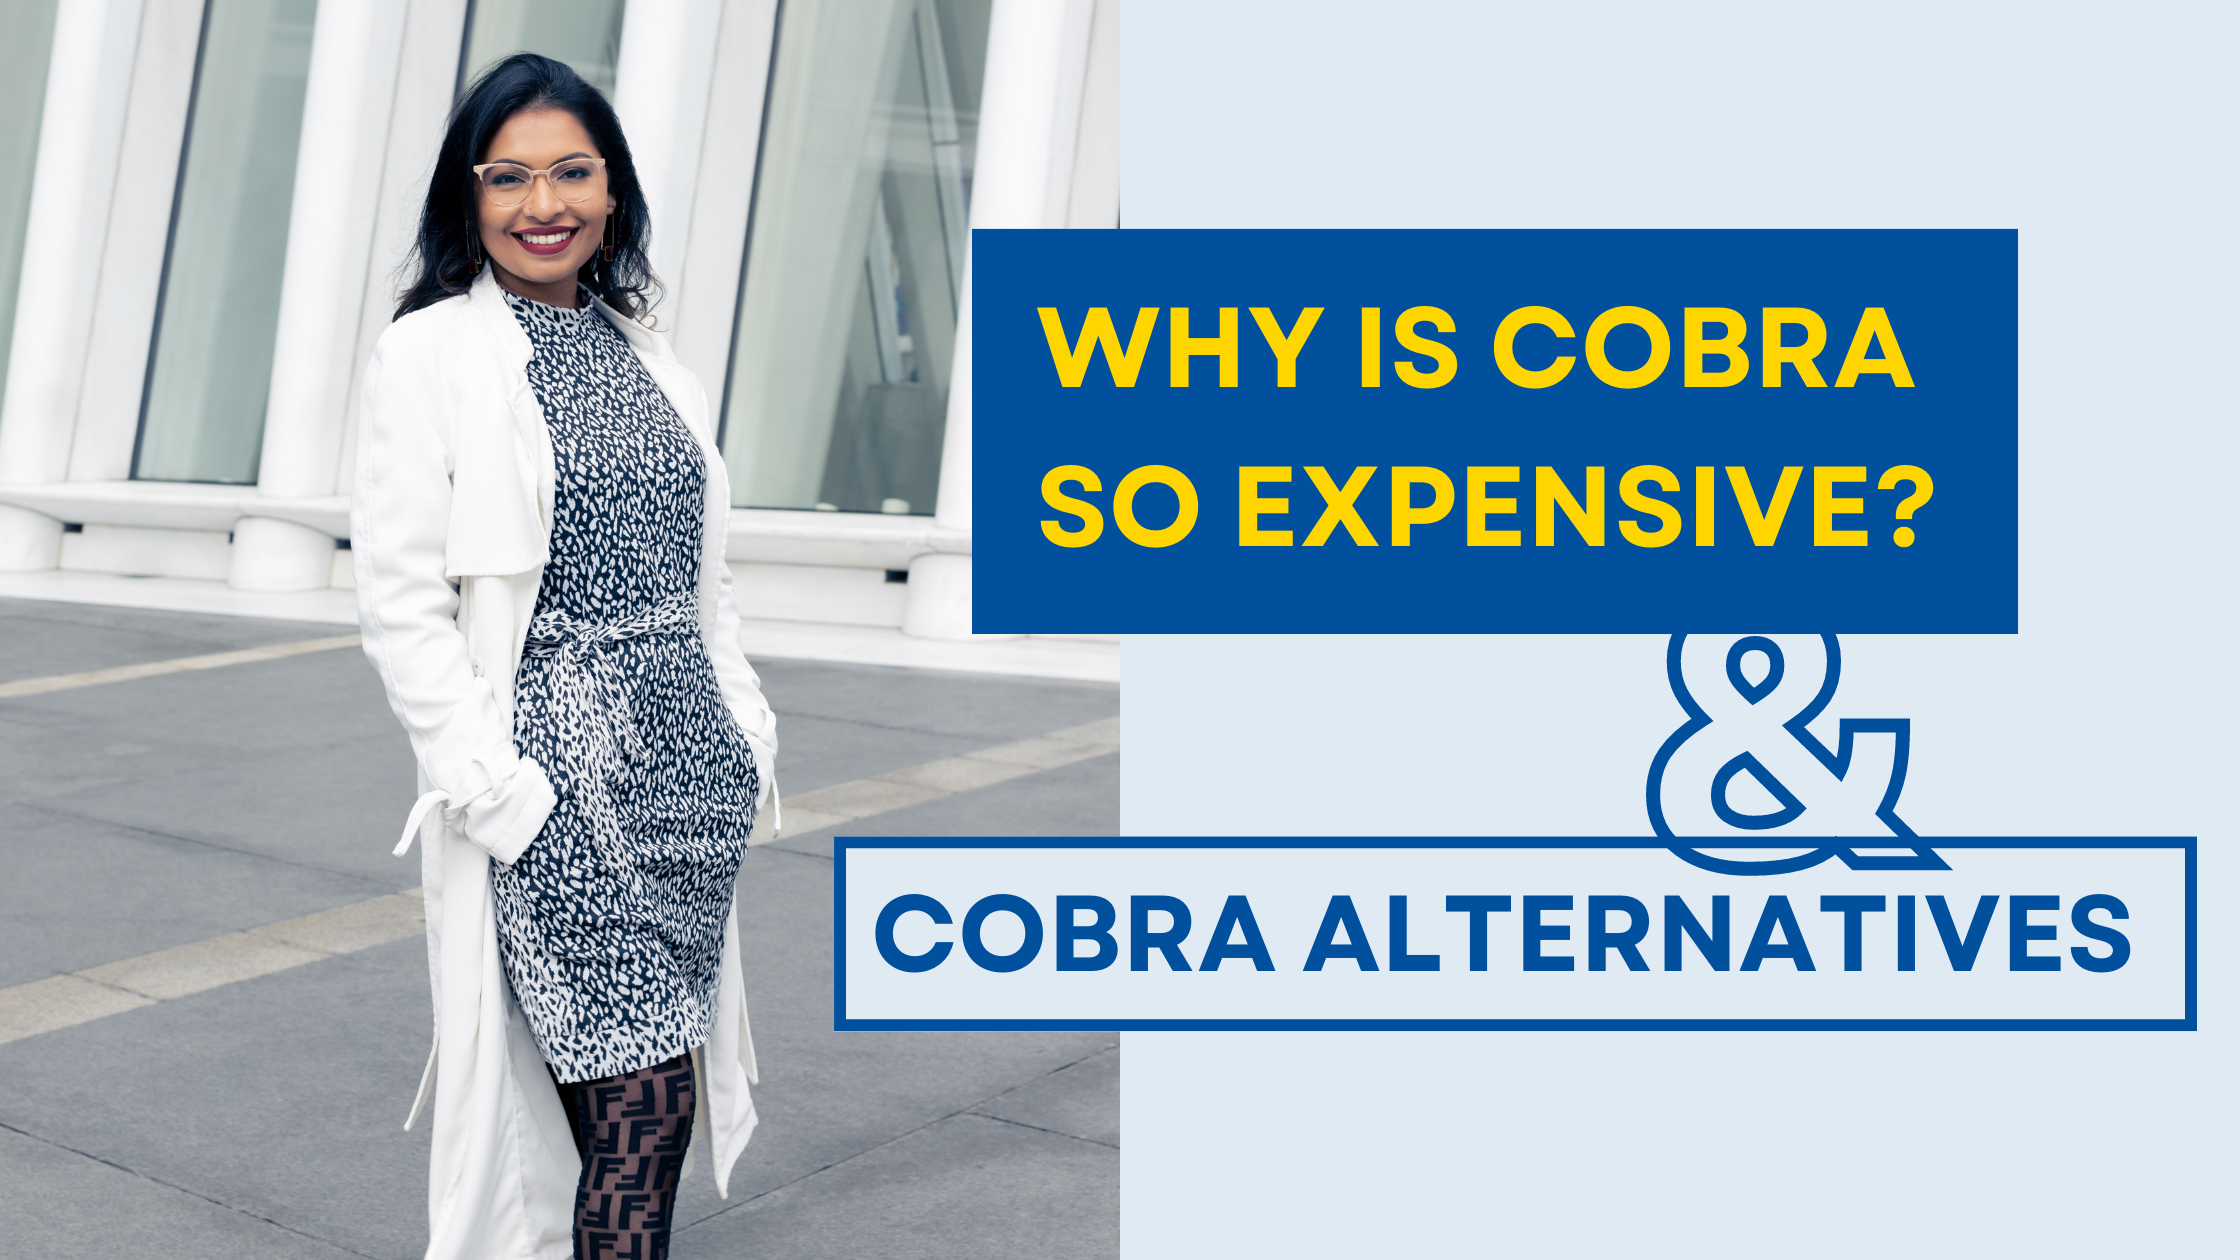 COBRA insurance alternatives